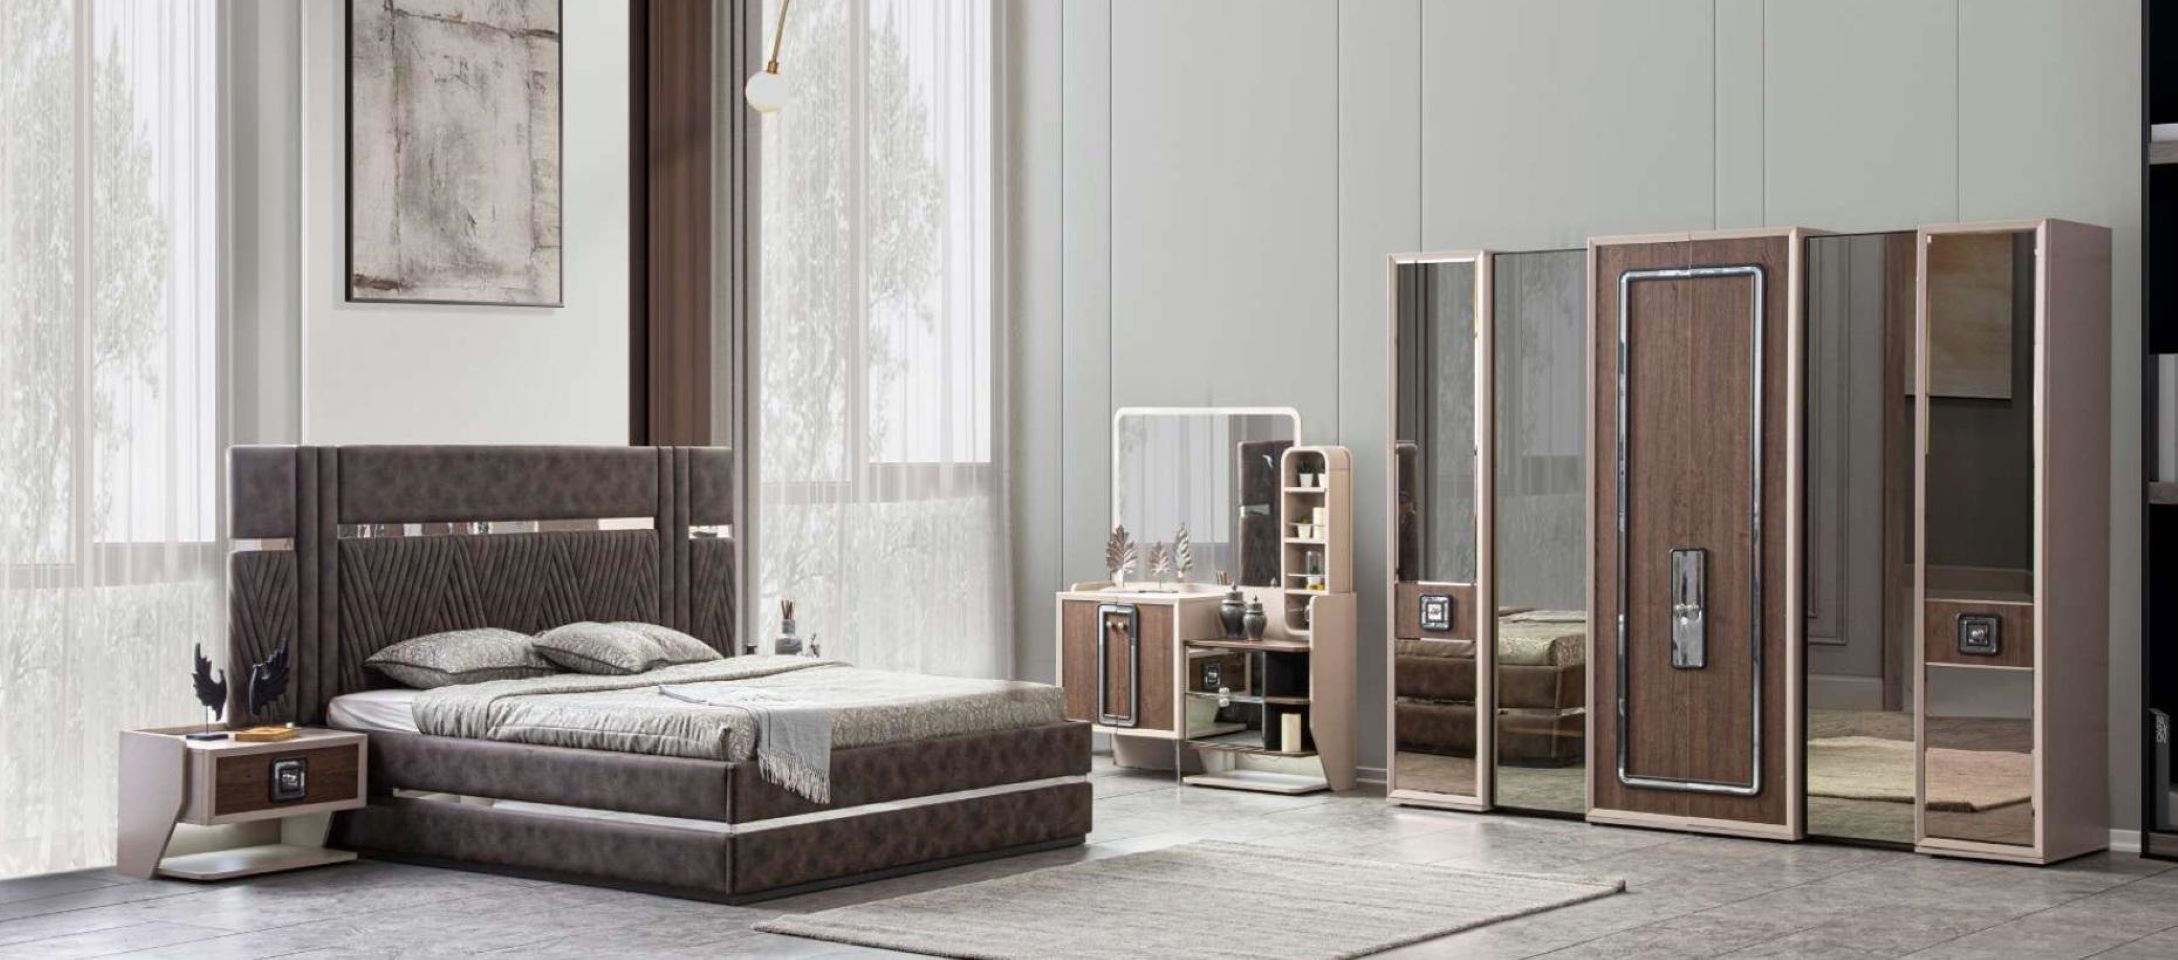 JVmoebel Schlafzimmer-Set Modern Bett 2x Nachttische 5tlg Schlafzimmer Design Luxus Möbel Neu, (5-St., Bett + 2x Nachttische + Kleiderschrank + Schminktisch), Made in Europe